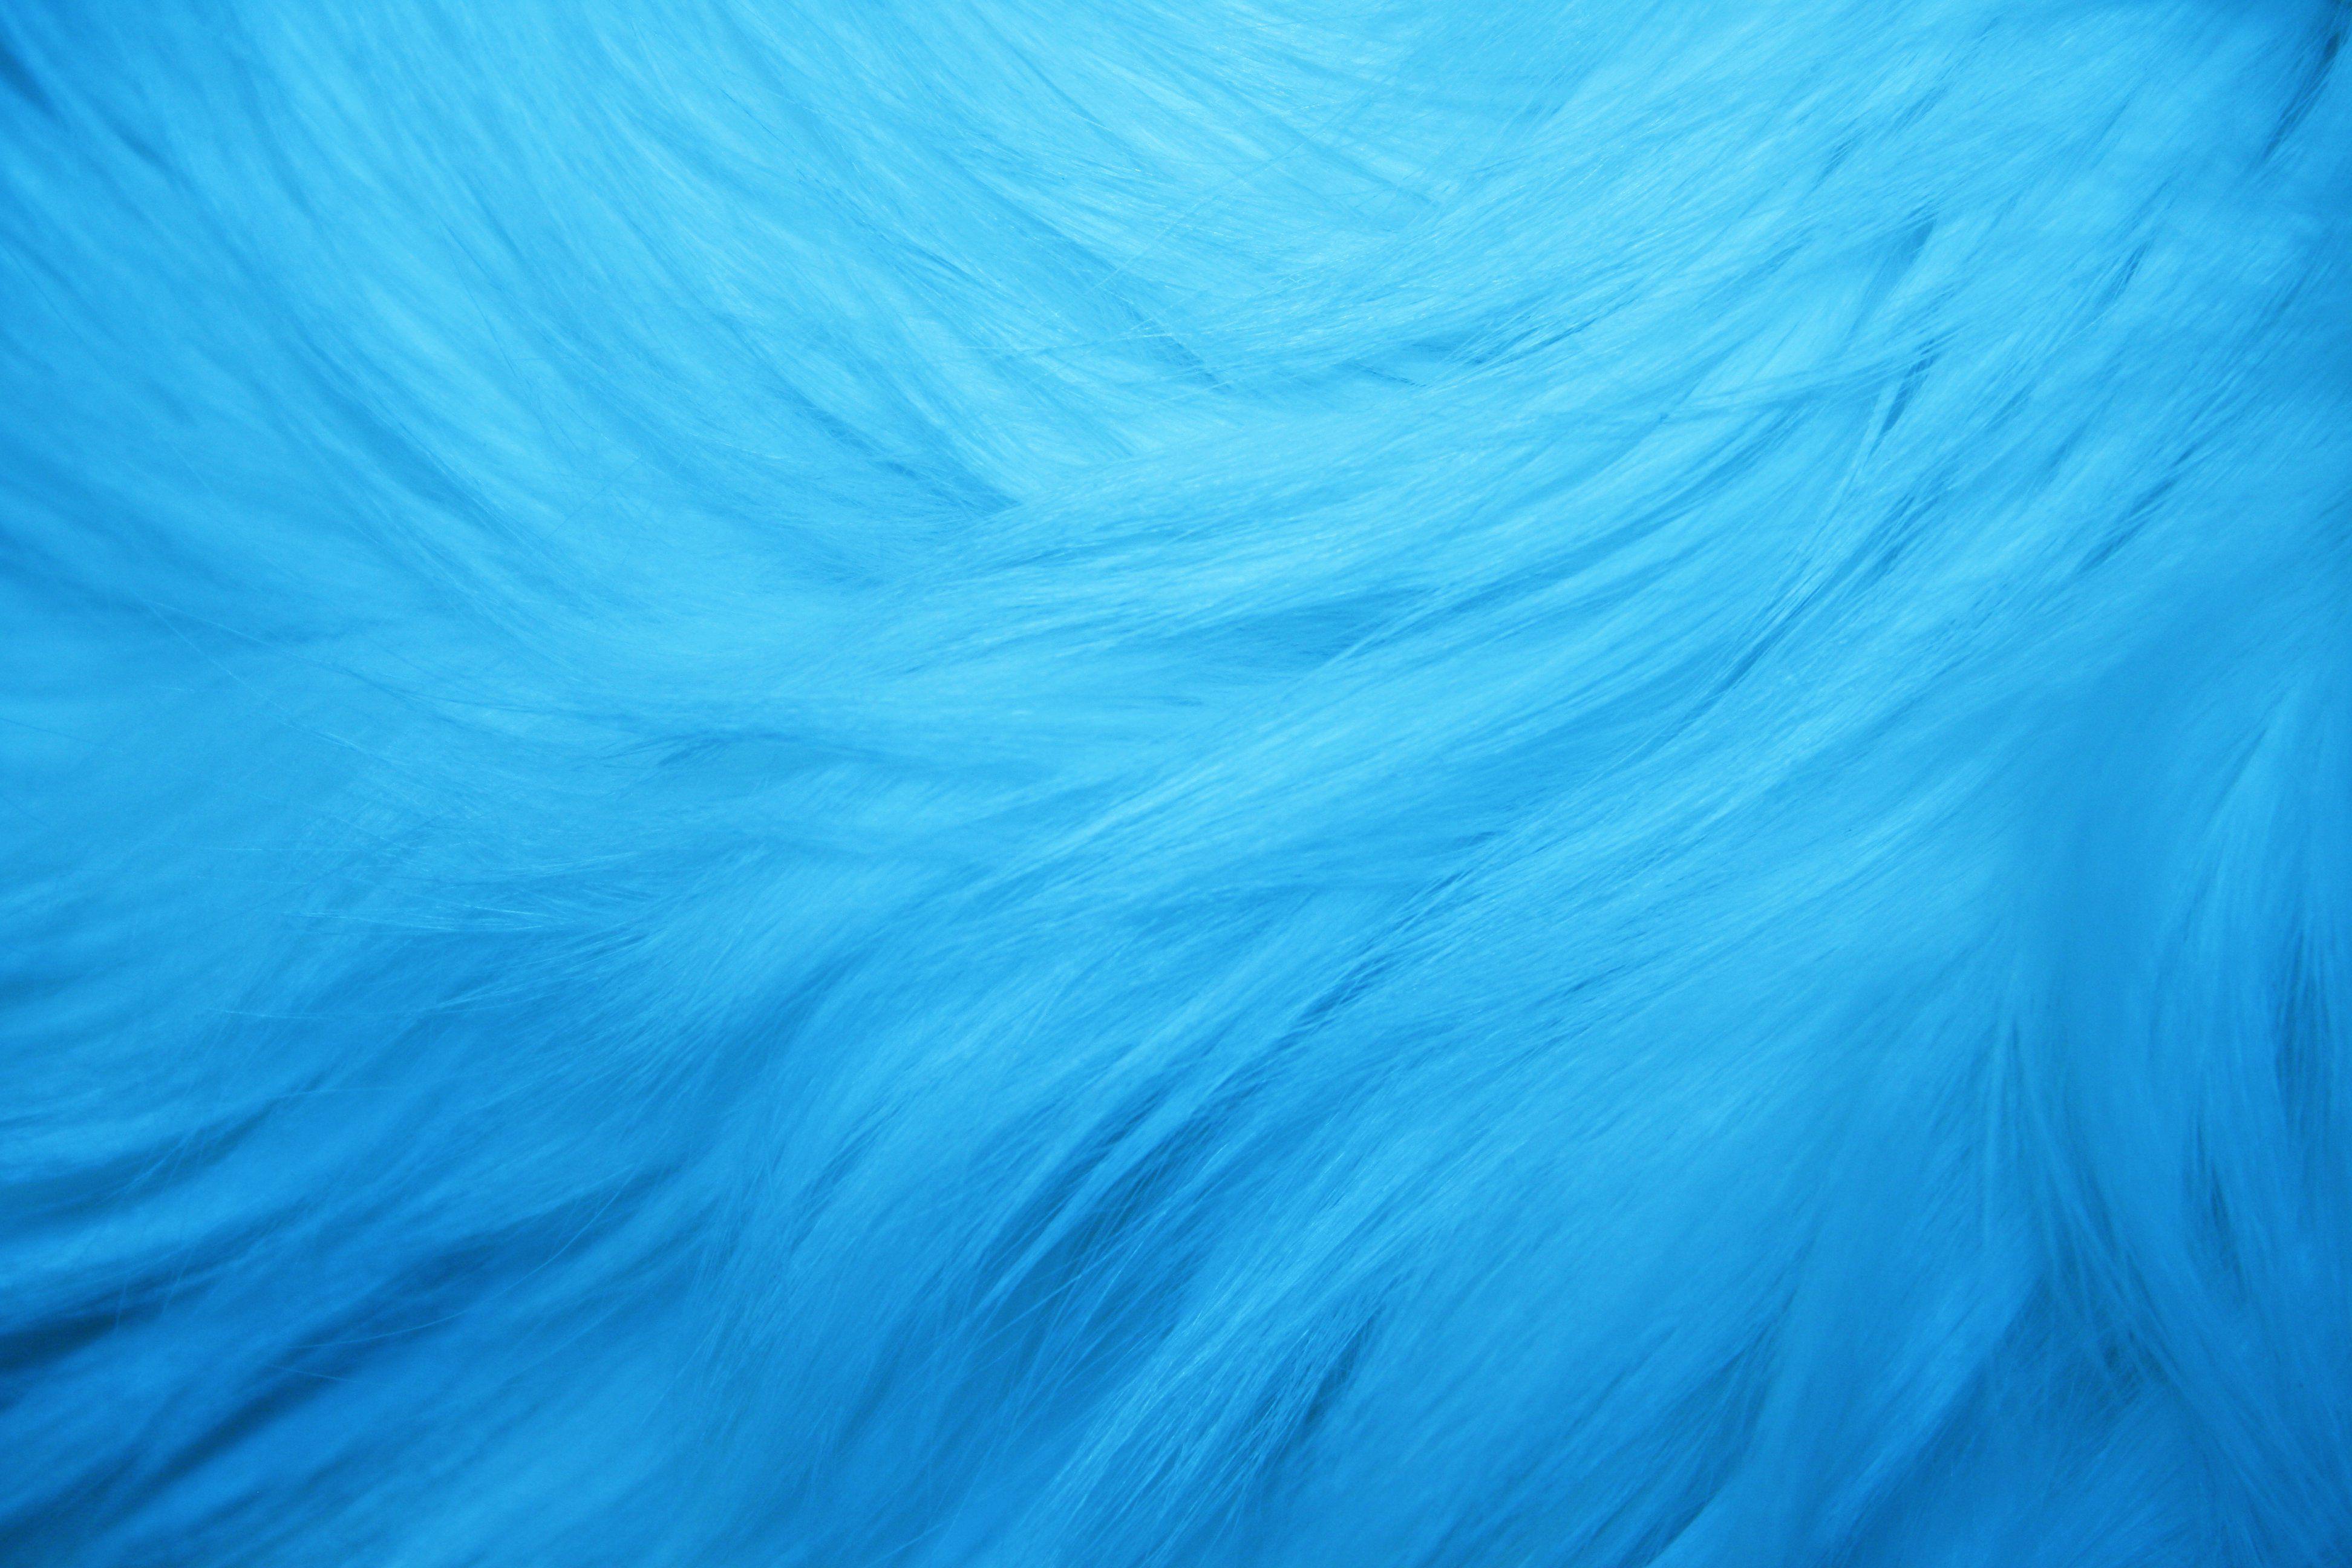 Light Blue Fur Texture Picture. Free Photograph. Photo Public Domain